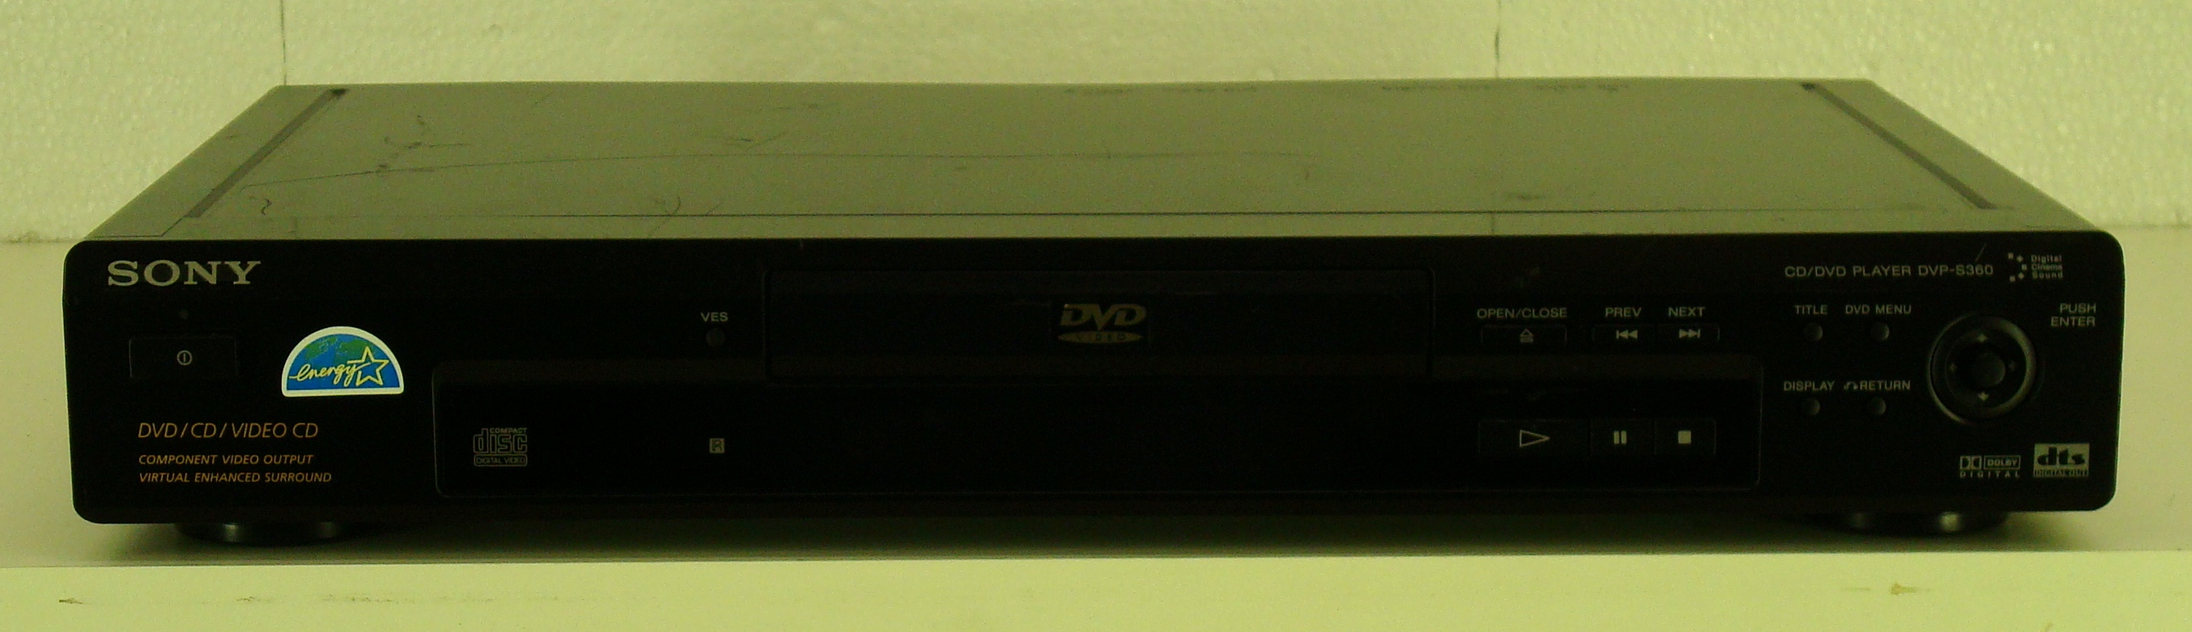 Sony DVP-S360